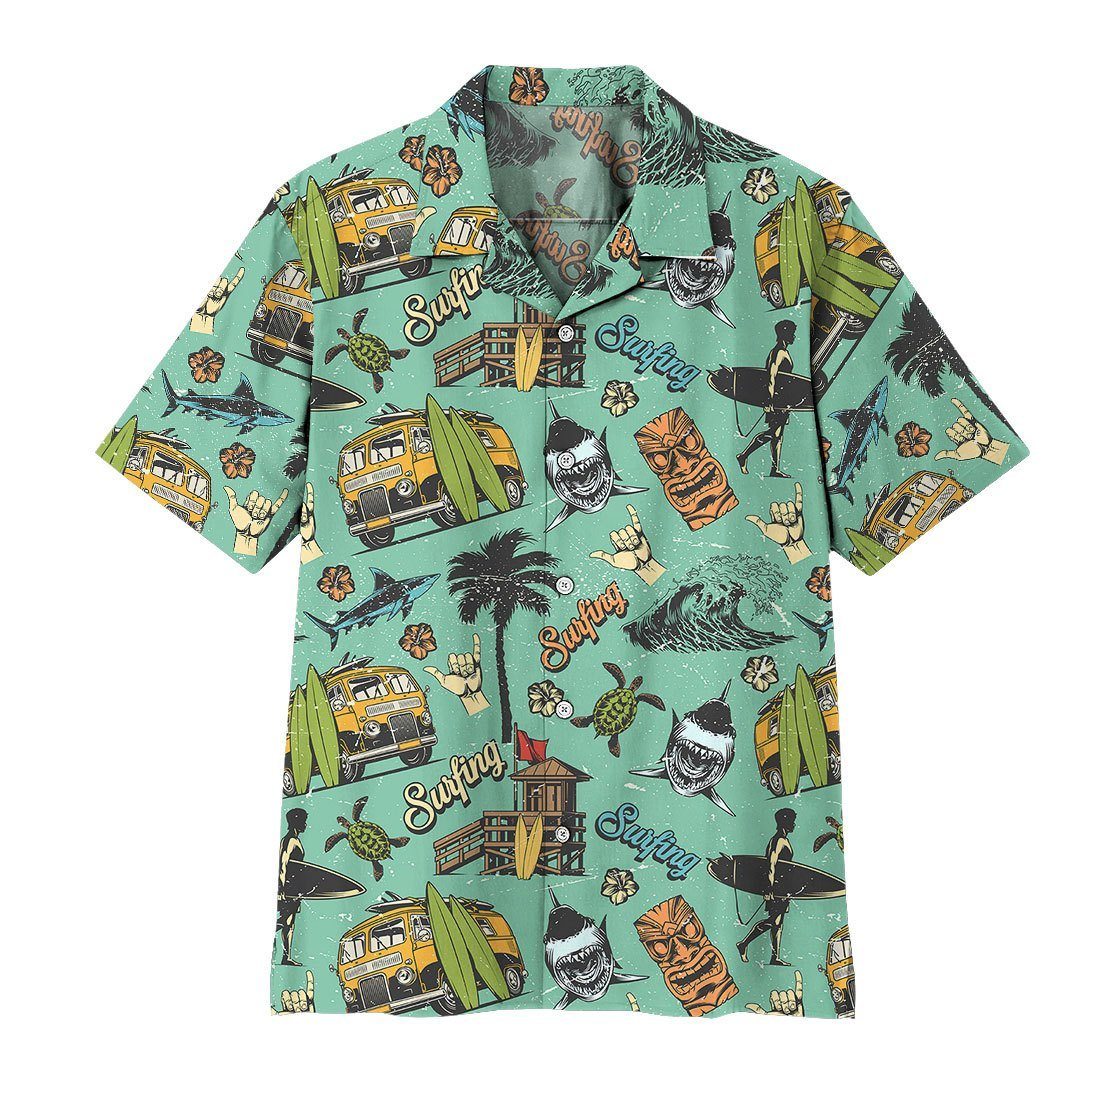 Gearhuman 3D Surfing Time Hawaii Shirt ZK3105219 Hawai Shirt Short Sleeve Shirt S 